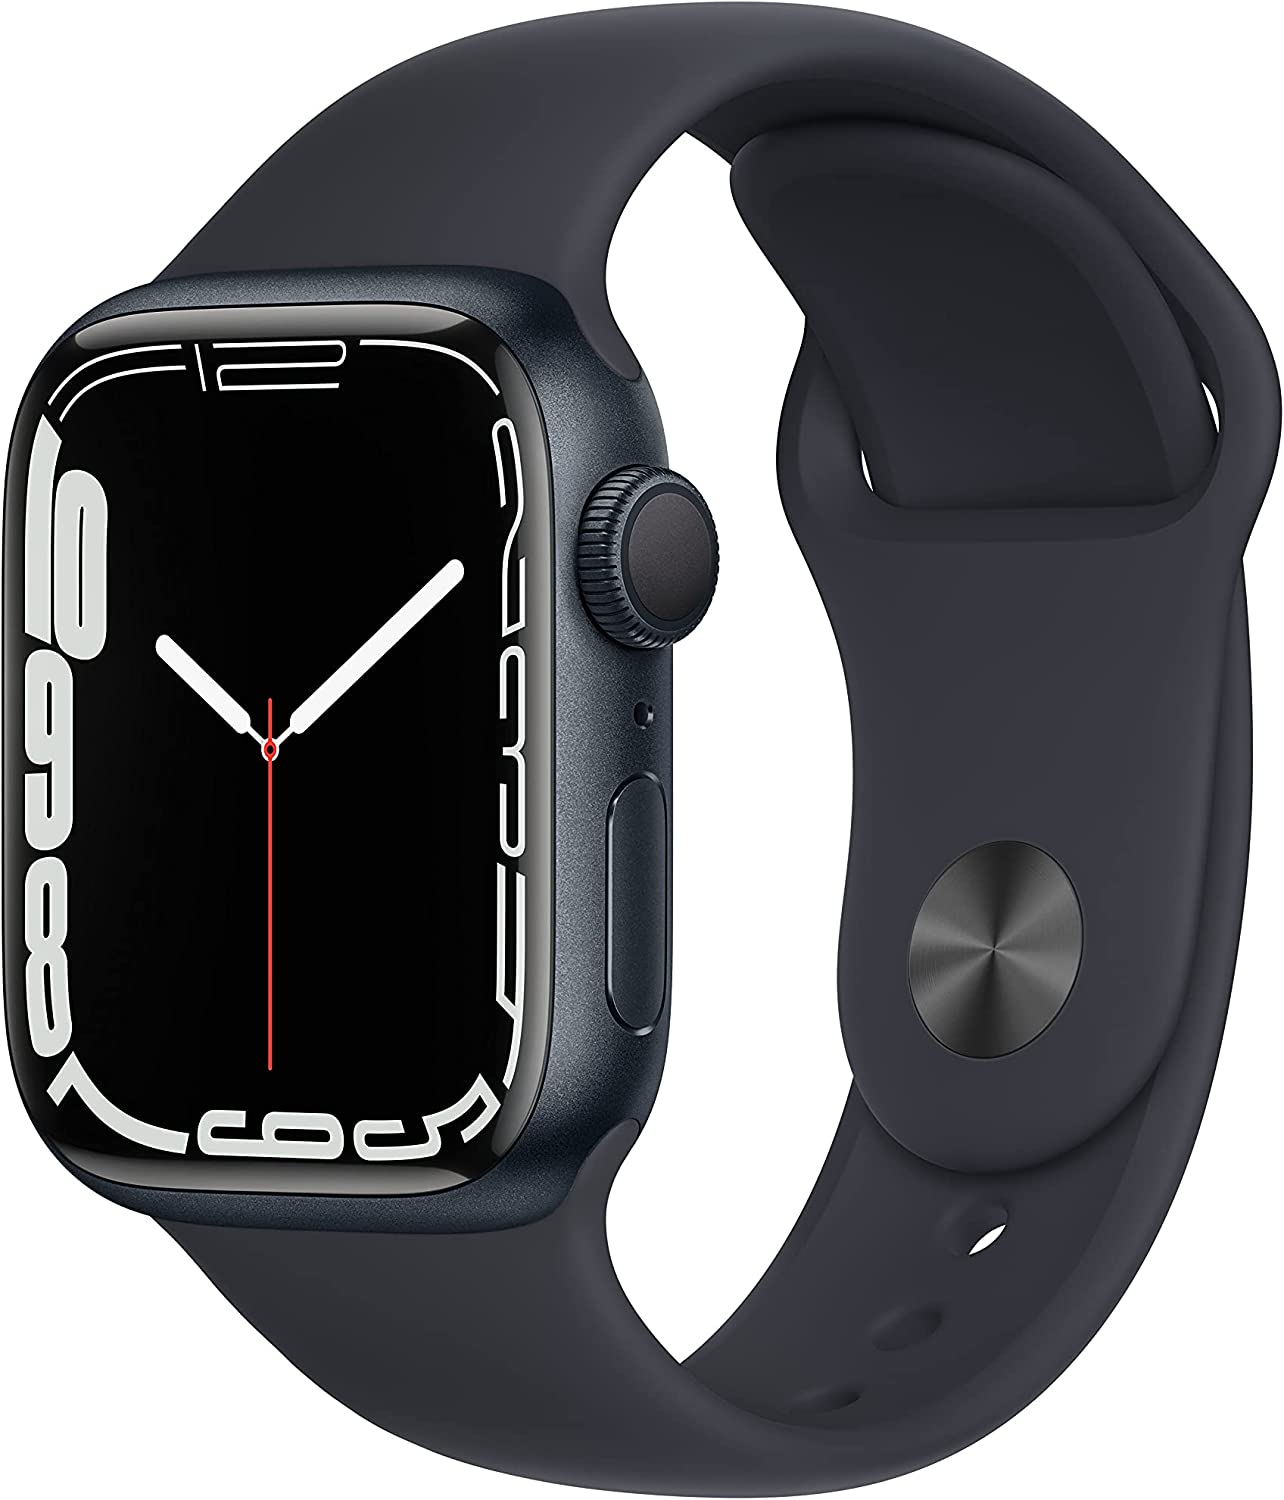 Apple Watch 8 vs Apple Watch 7 smartwatch